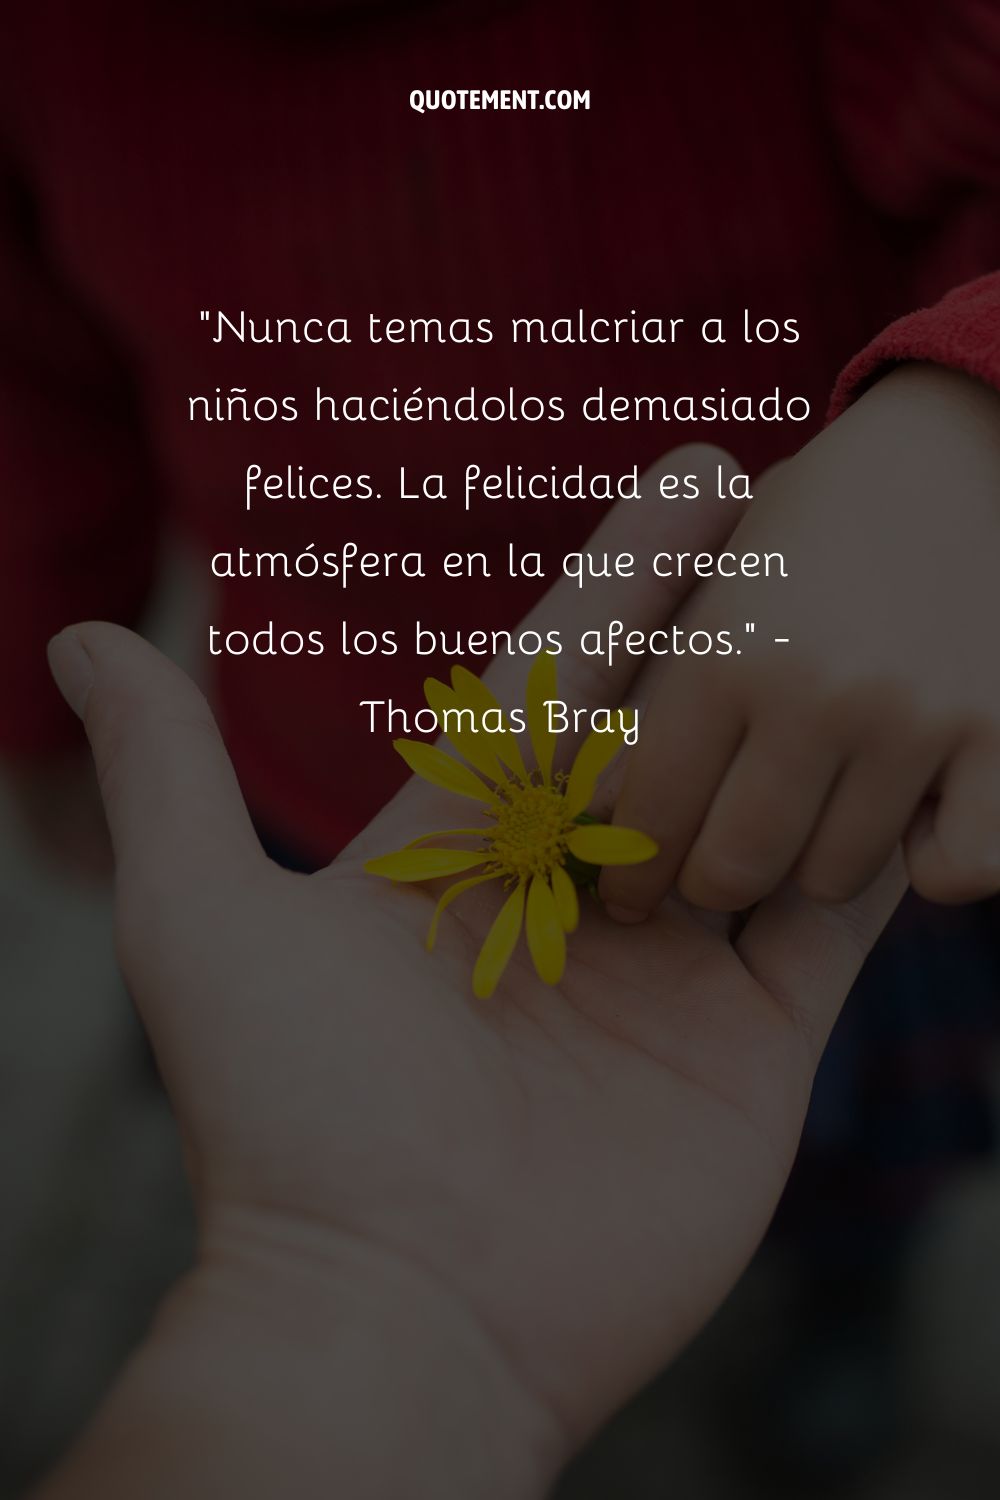 "Nunca temas malcriar a los niños haciéndolos demasiado felices. La felicidad es la atmósfera en la que crecen todos los buenos afectos". - Thomas Bray